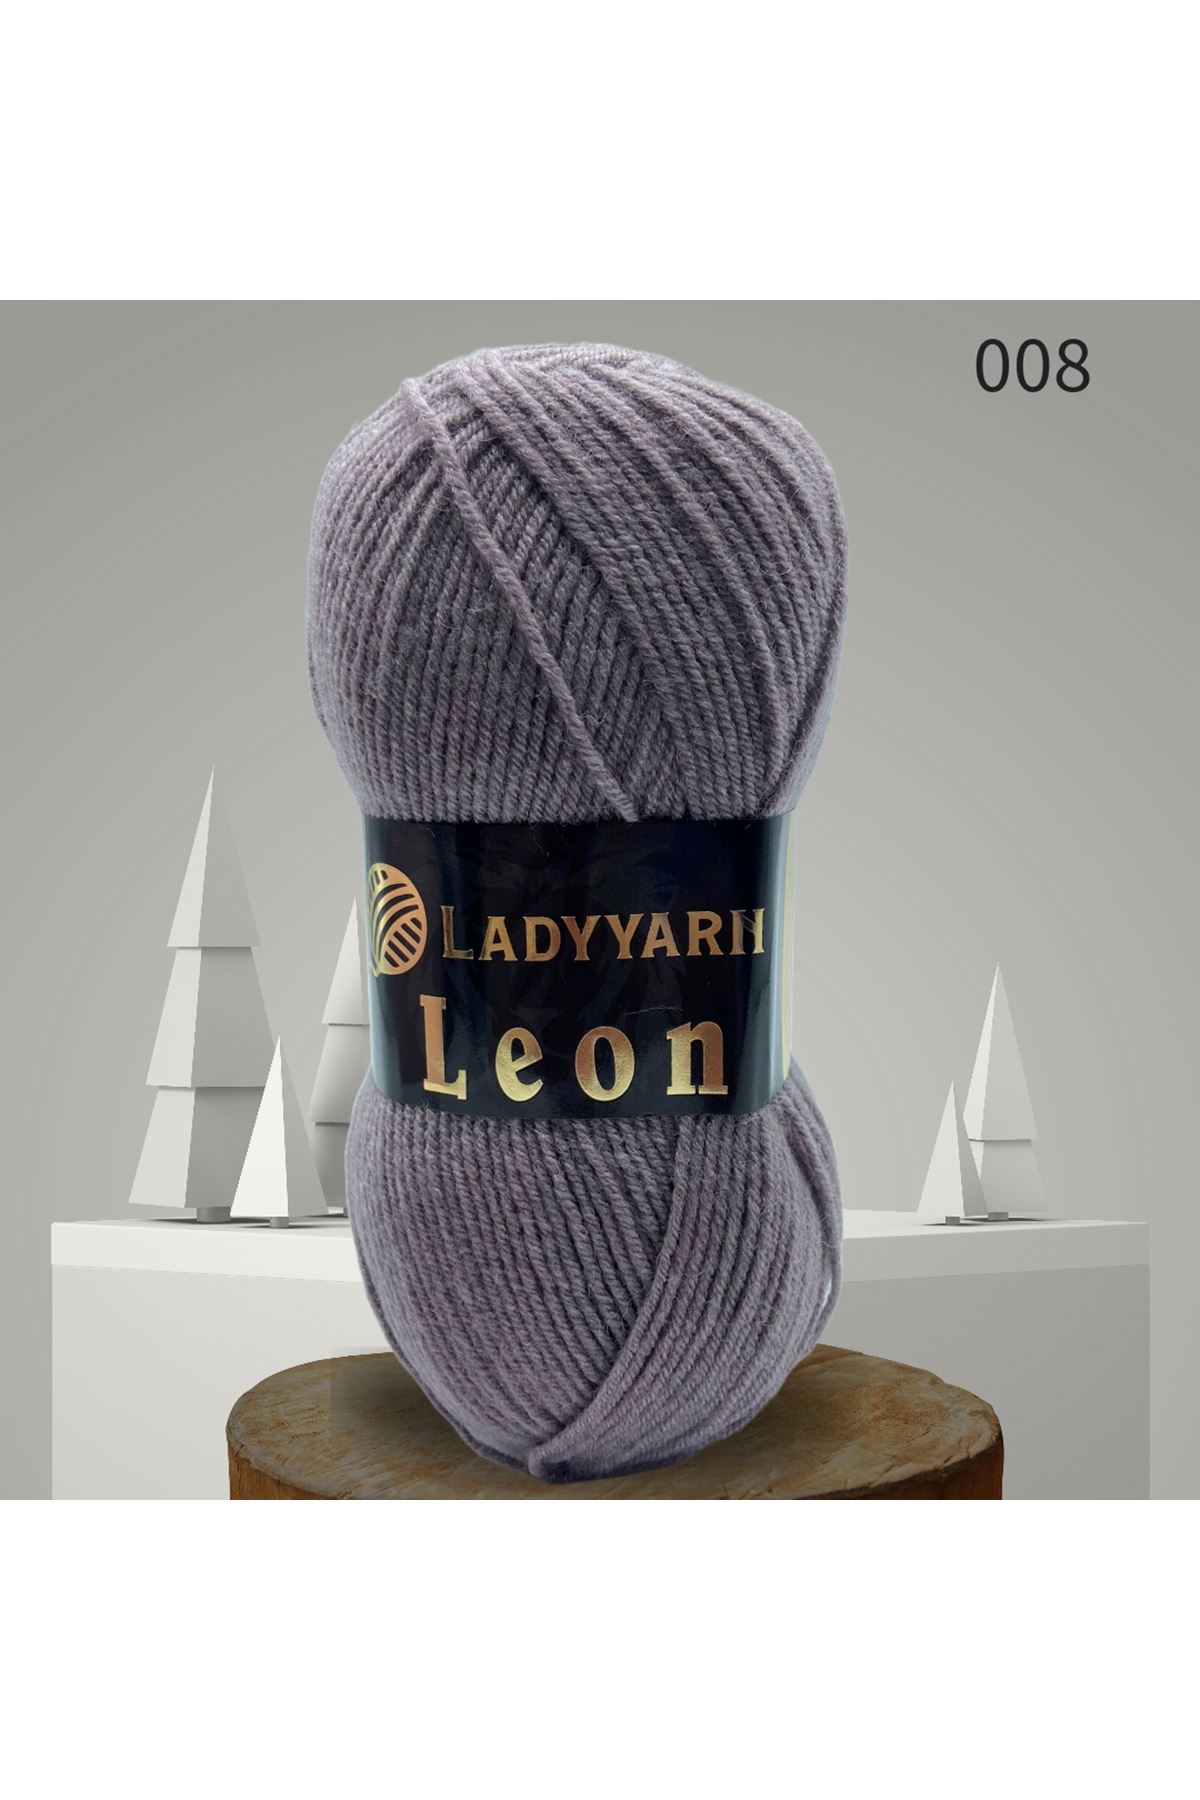 Lady Yarn Leon %49 Yünlü 008 Eflatun